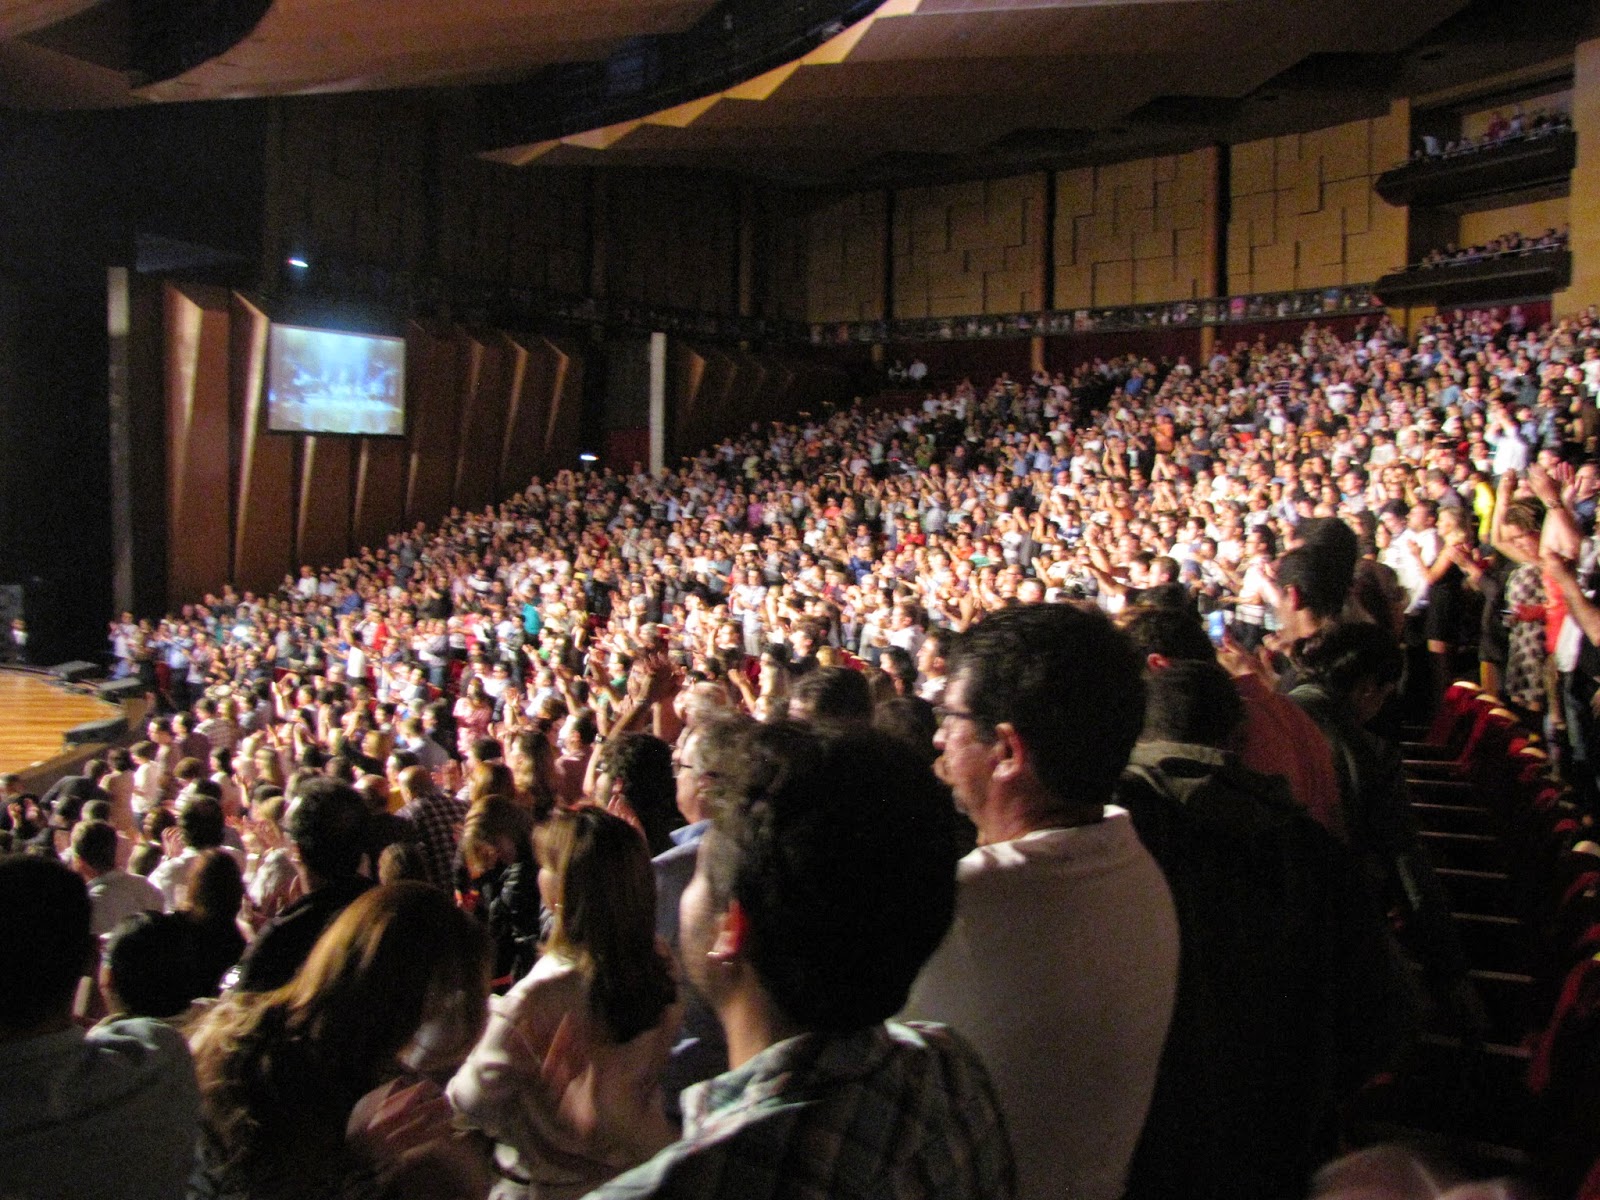 Roger Hodgson ~ Teatro Positivo ~ Curitiba, Brazil